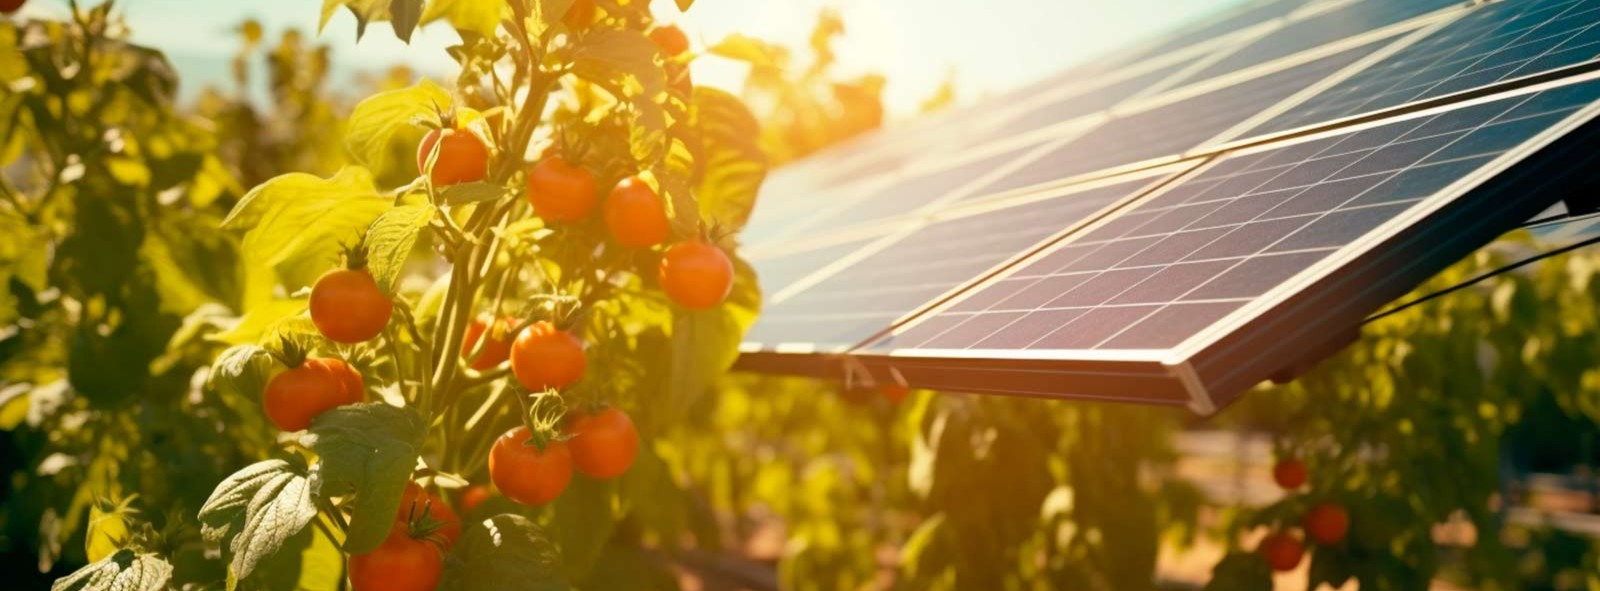 Energía Agrovoltaica: Integrando Sostenibilidad en la Agricultura y Generación de Energía